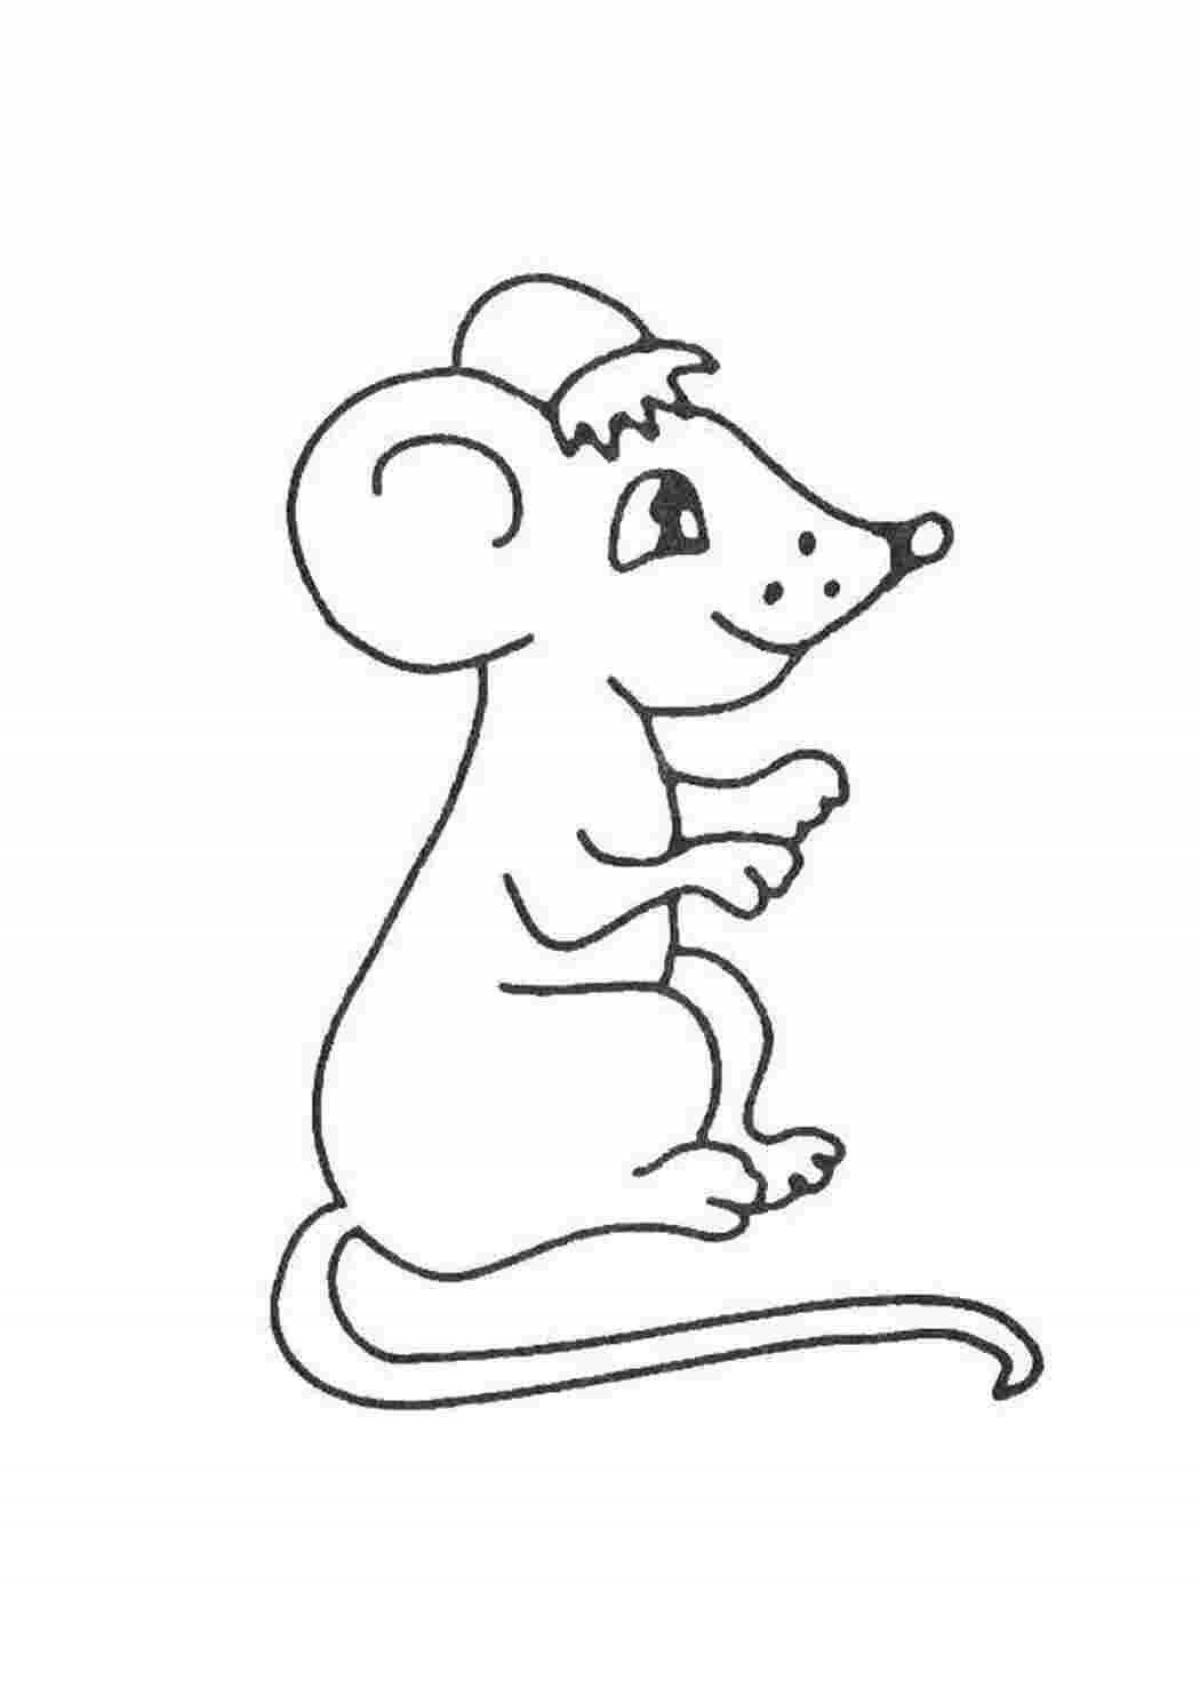 Раскраска мышь распечатать. Мышка из сказки Теремок раскраска для детей. Мышь раскраска для детей. Раскраска мышонок. Мышонок раскраска для детей.